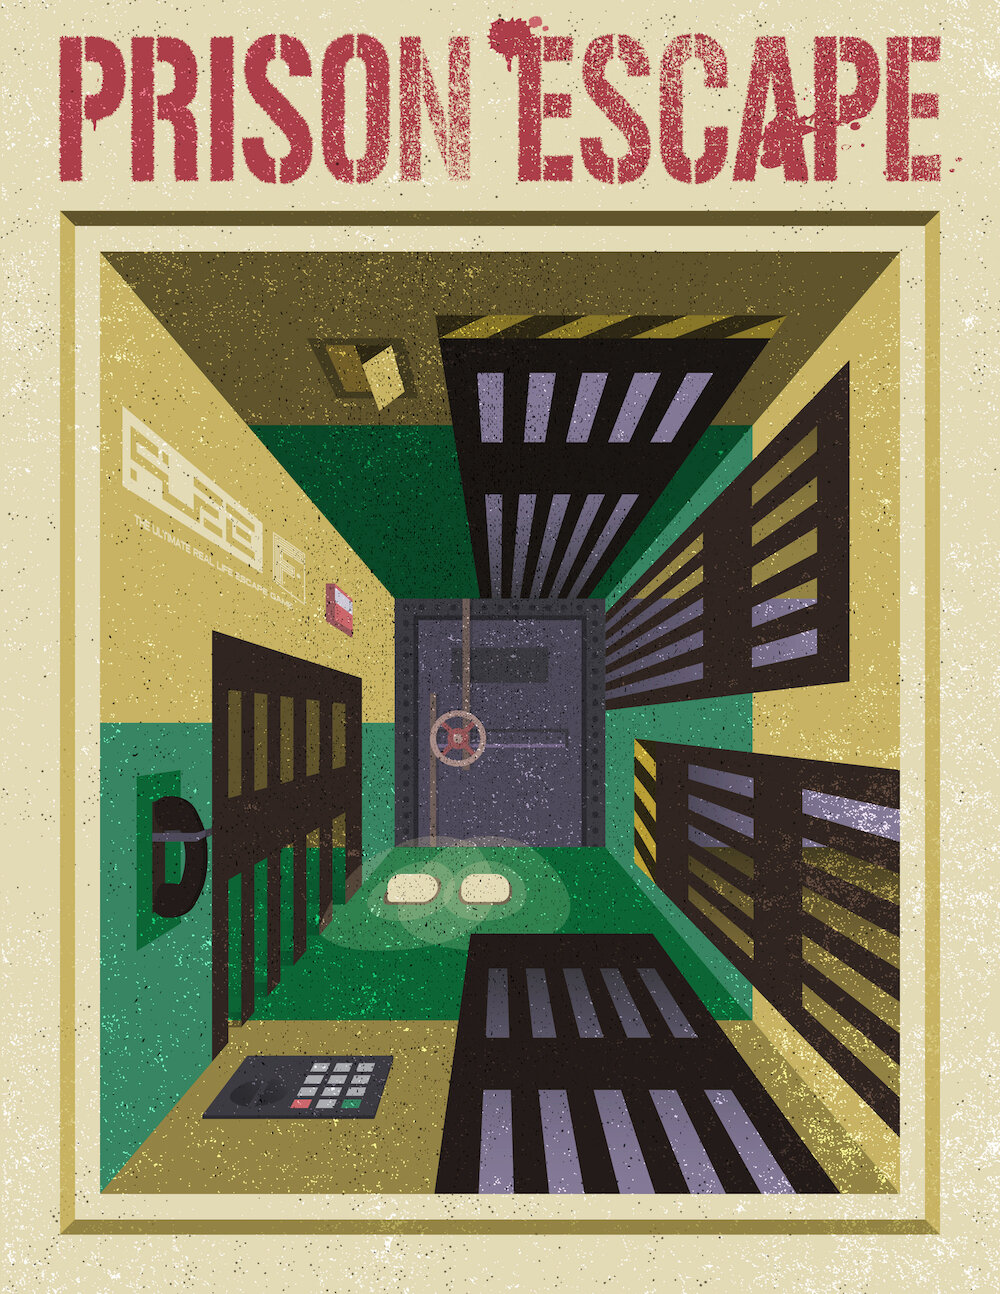 PRISON ESCAPE (REDMOND) — FLEE - VR & Escape Games Arena